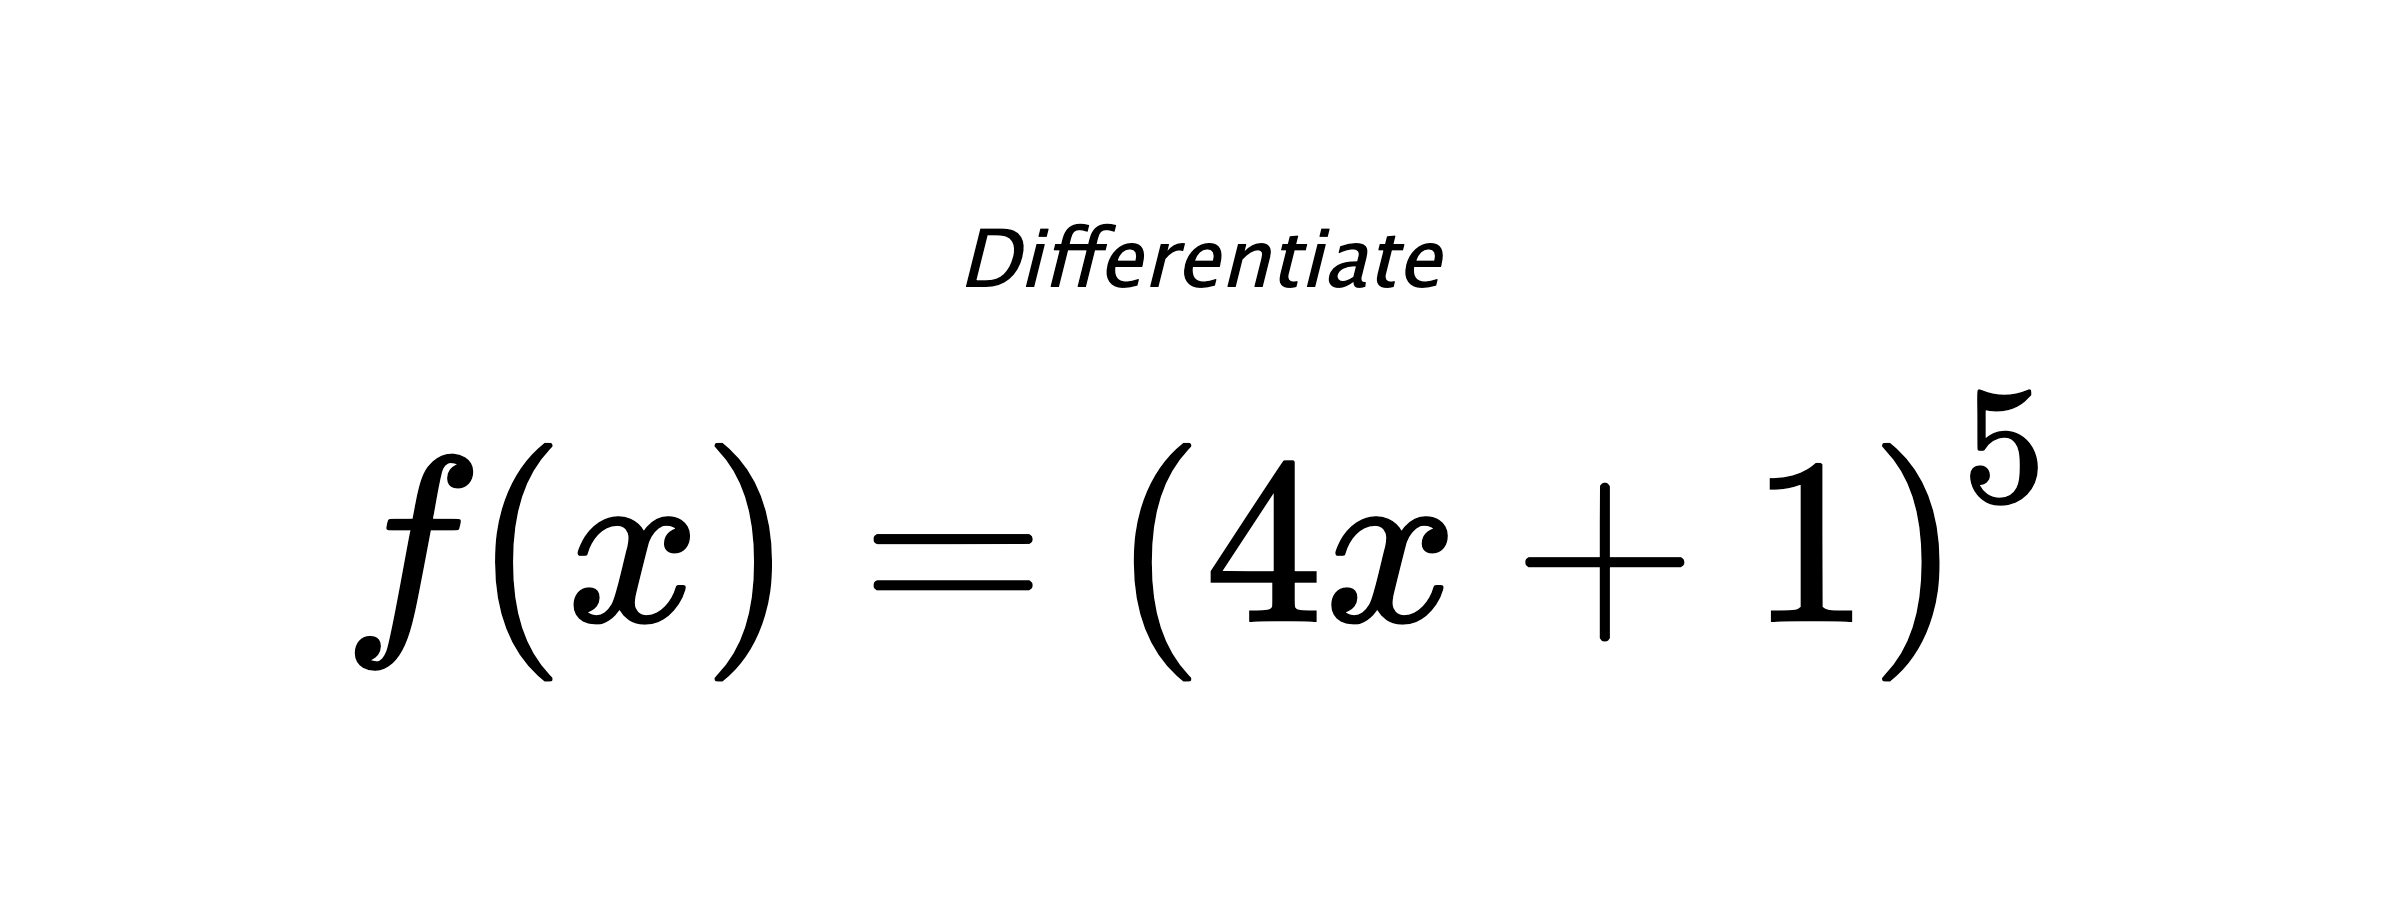 Differentiate $ f(x) = \left(4 x + 1\right)^{5} $